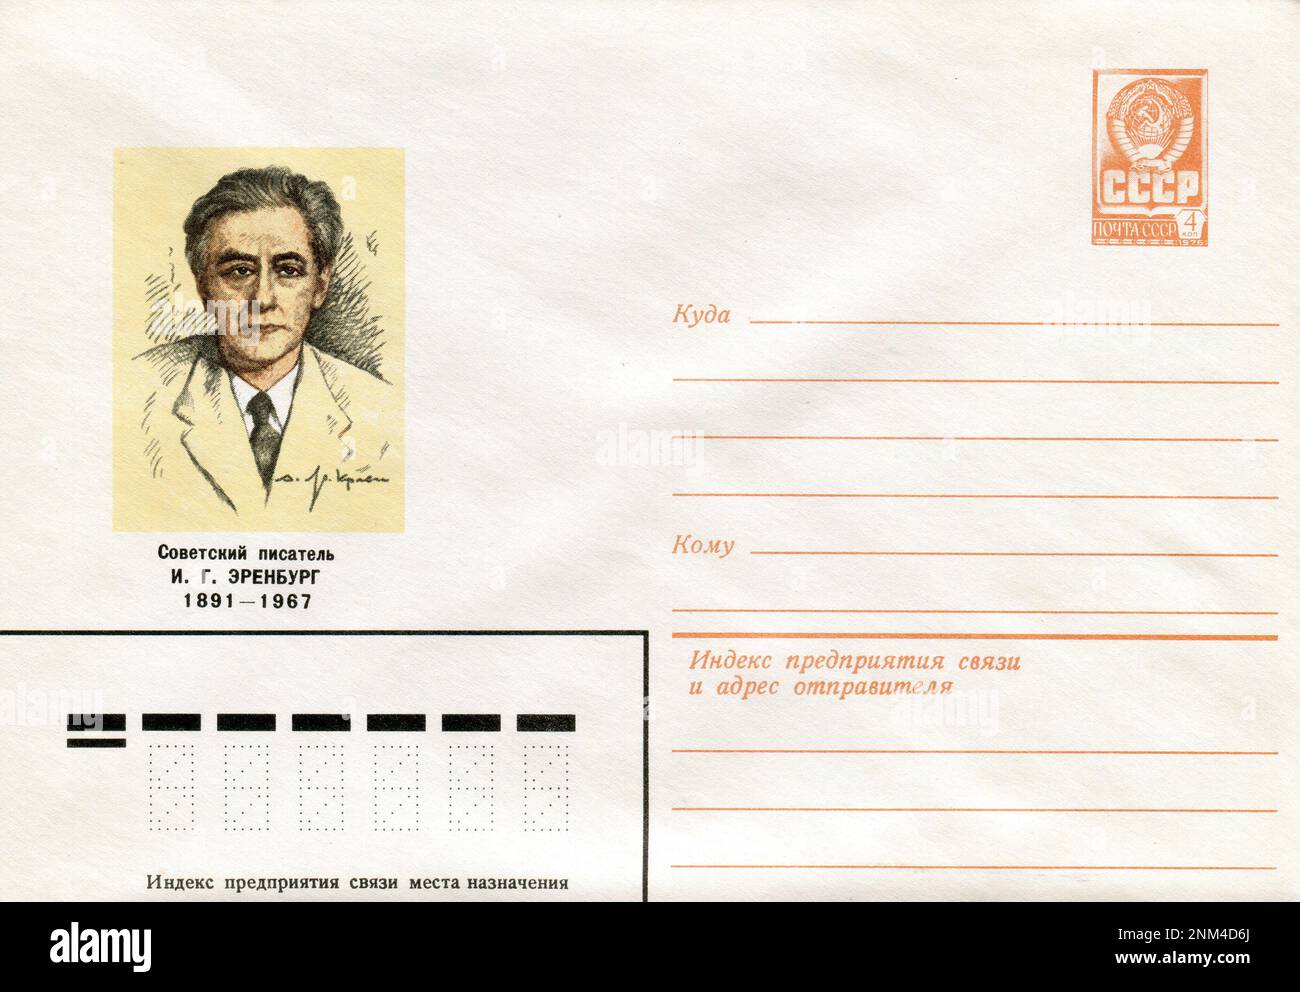 UdSSR - circa 1976: Ein UdSSR-Umschlag mit Briefmarken. Ilja Grigorjewitsch Ehrenburg (Russisch: Илья Григорьевич Эренбург; Januar 26 [O.S. Januar 14] 1891 – 31. August 1967) war ein sowjetischer Schriftsteller, Revolutionär, Journalist und Historiker. Stockfoto